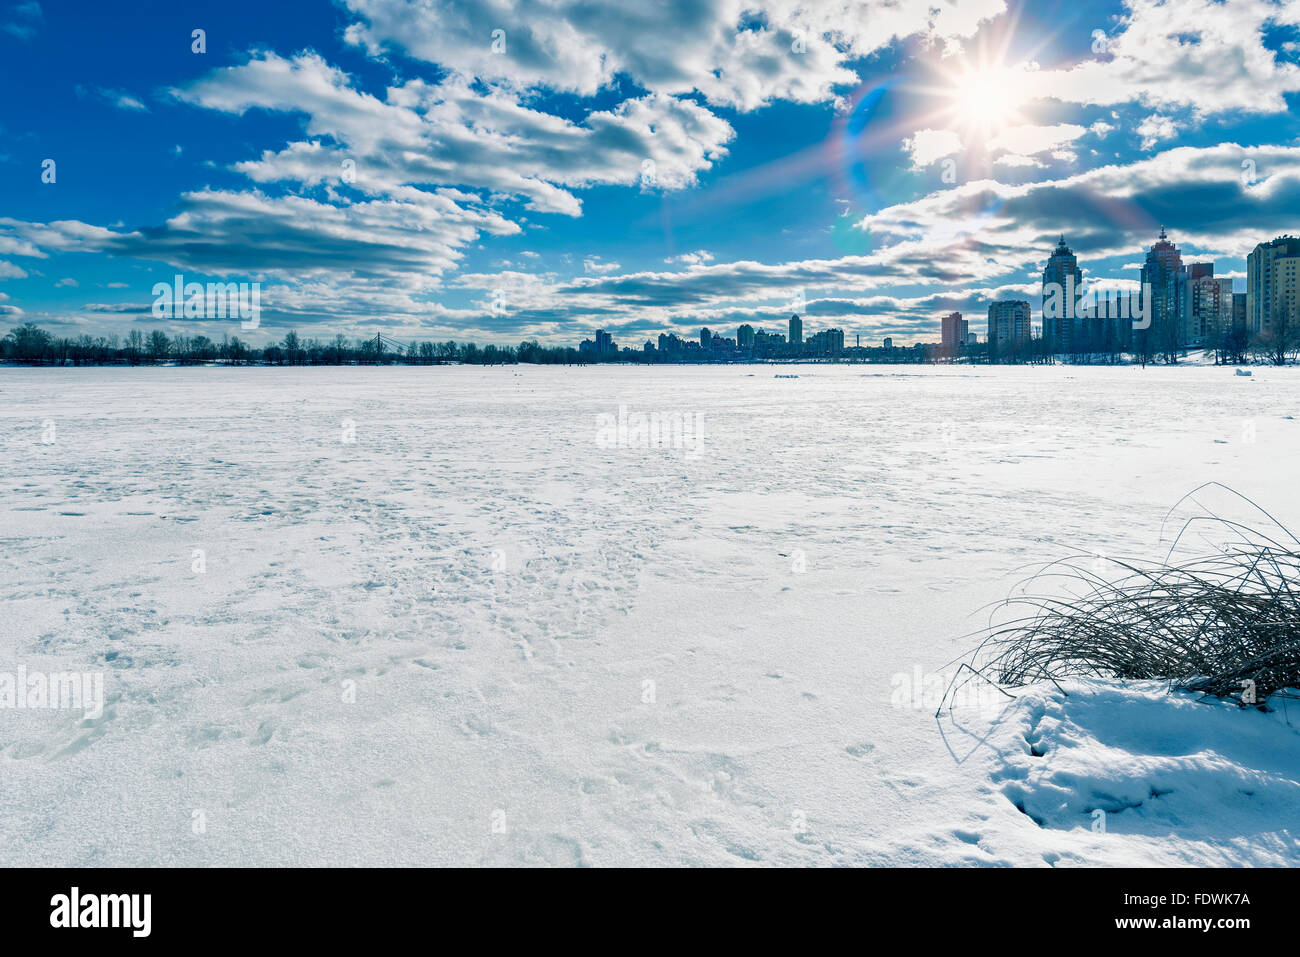 Ucrania en guerra - Página 4 El-congelado-rio-dnieper-en-kiev-ucrania-durante-el-invierno-los-edificios-de-la-ciudad-ha-nacido-en-el-fondo-fdwk7a